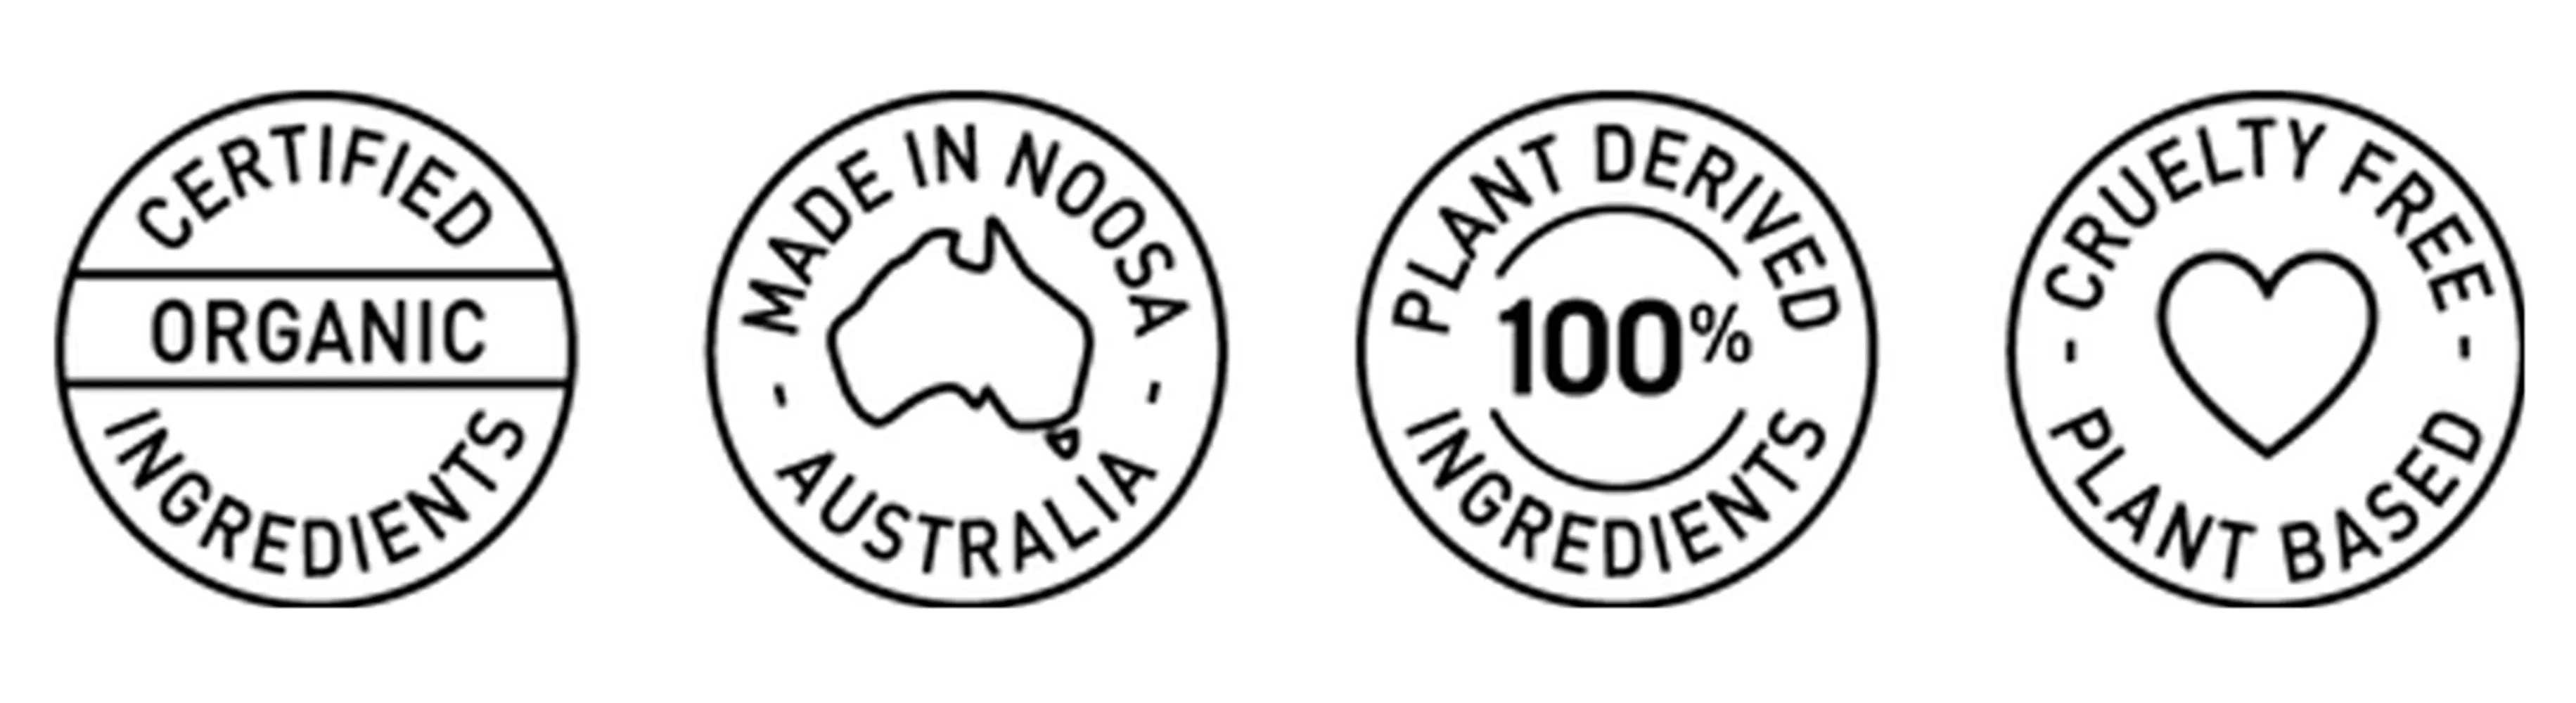  Noosa Basics 植萃體香噴霧系列,生物可分解環保包裝,天然成分,無動物測驗,無棕櫚油